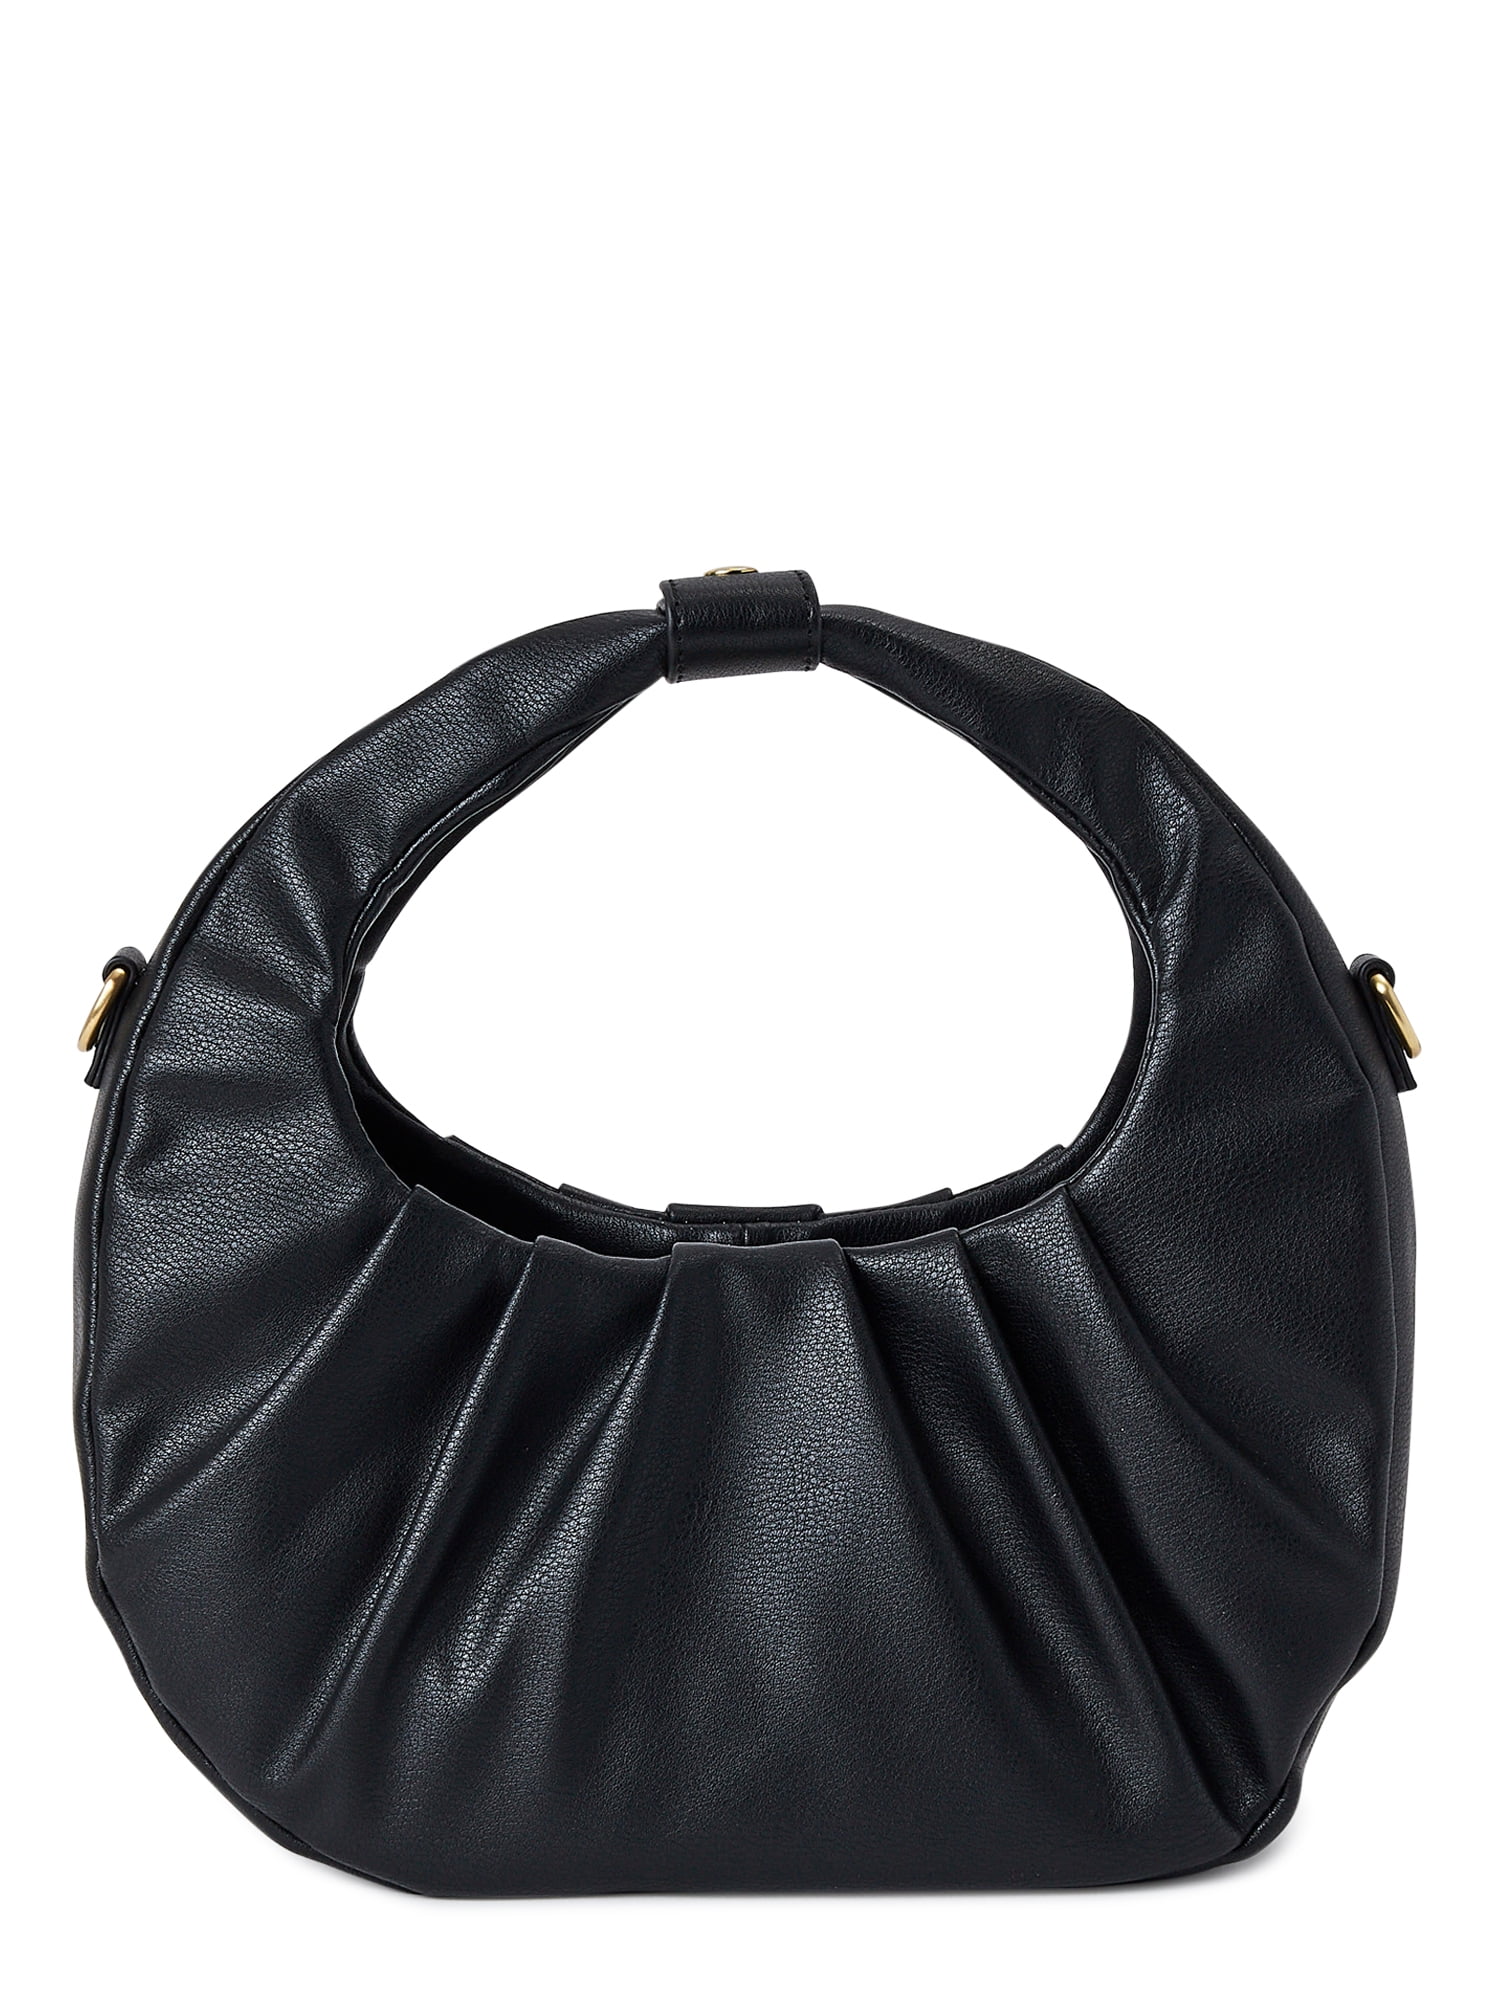 Calvin Klein Black/Gold Purse Shoulder Bag Tote